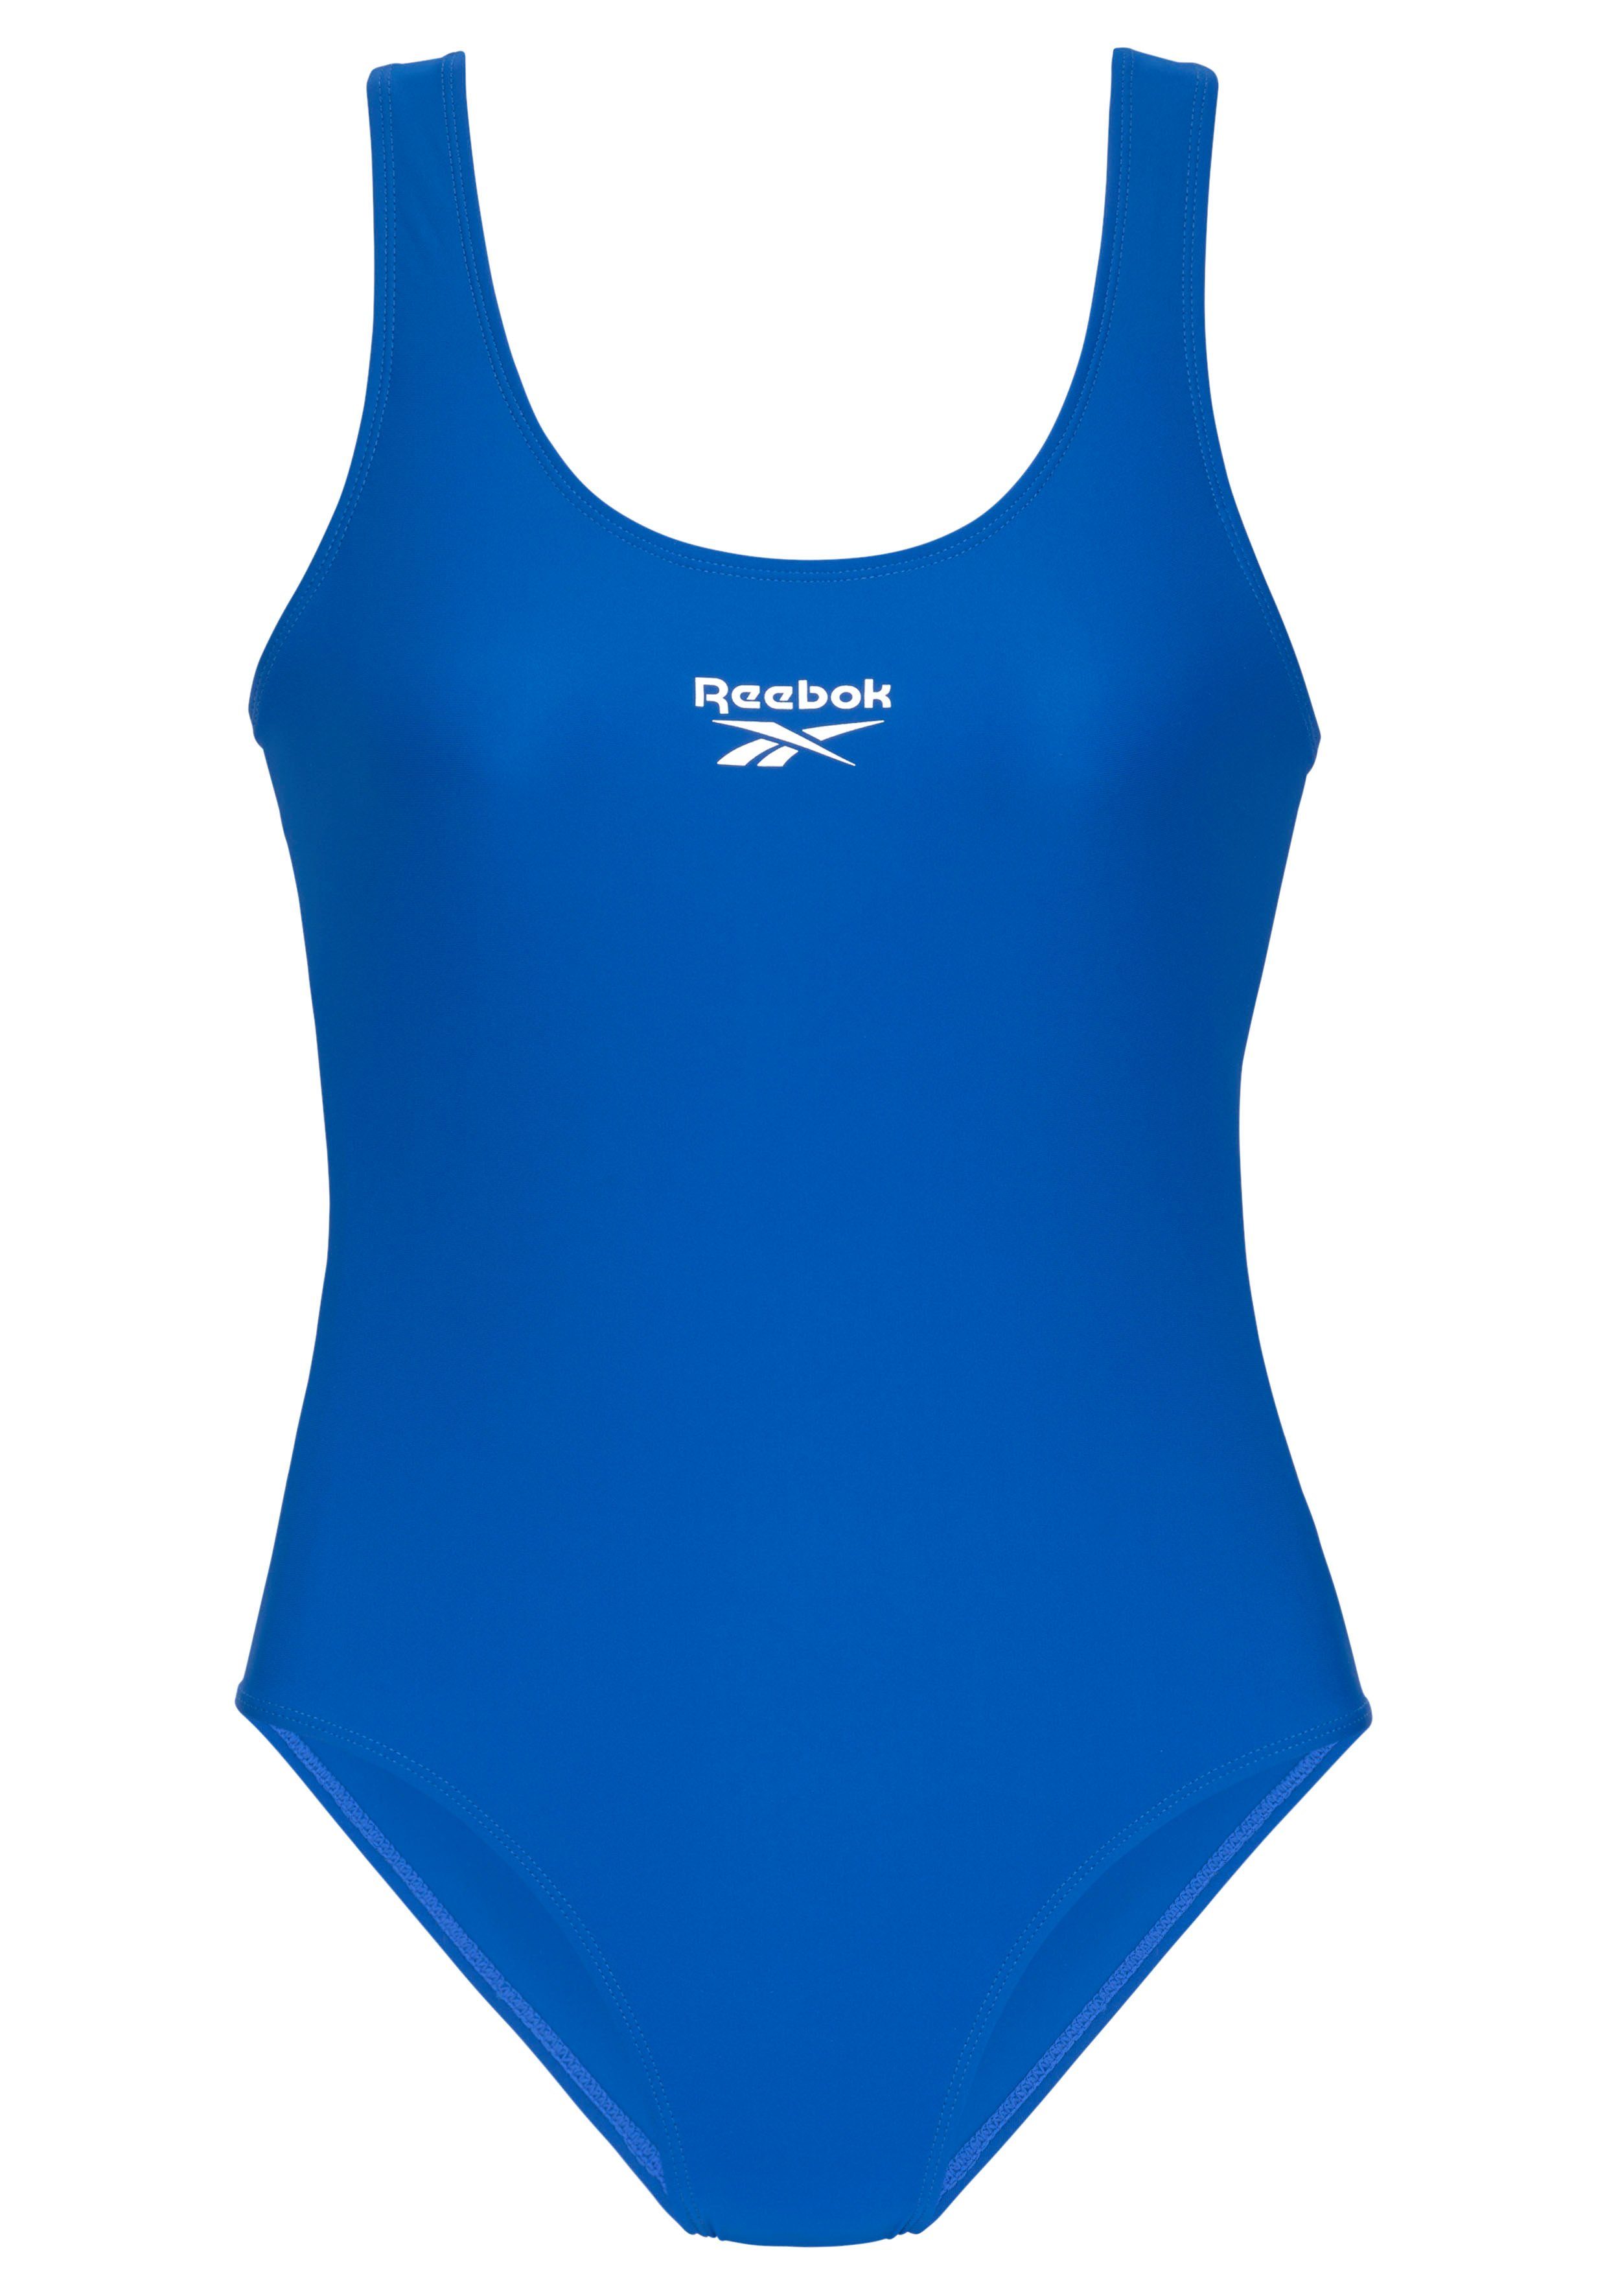 Reebok Badeanzug Logoschriftzug humble am vorn blue mit Rücken und Adelia